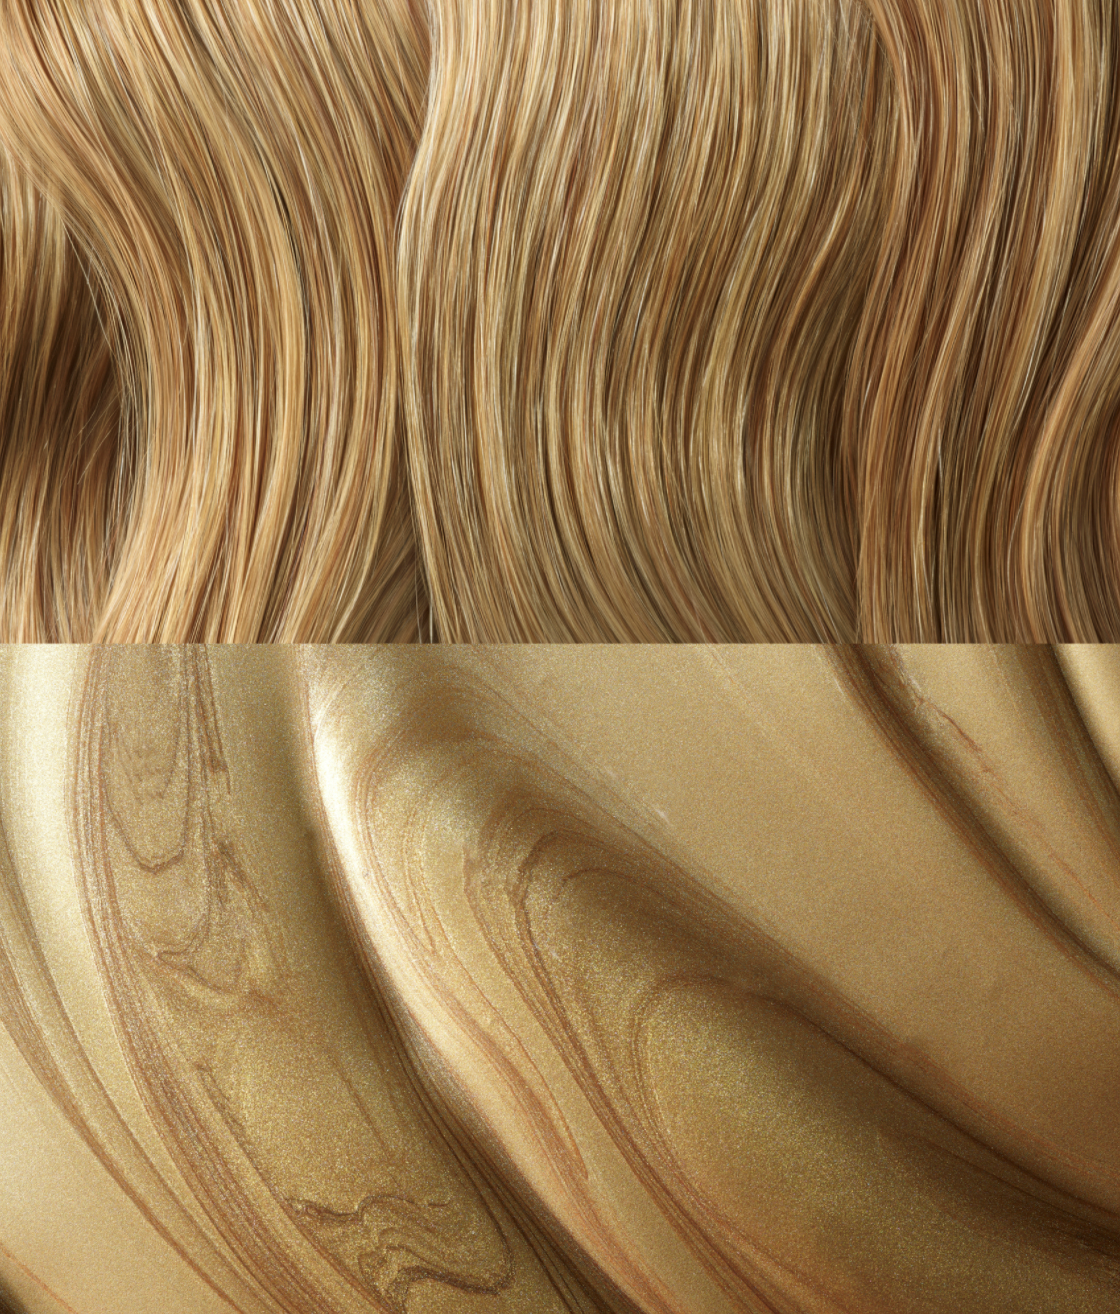 En la parte superior de la imagen hay un cabello rubio y abajo una textura cremosa y dorada